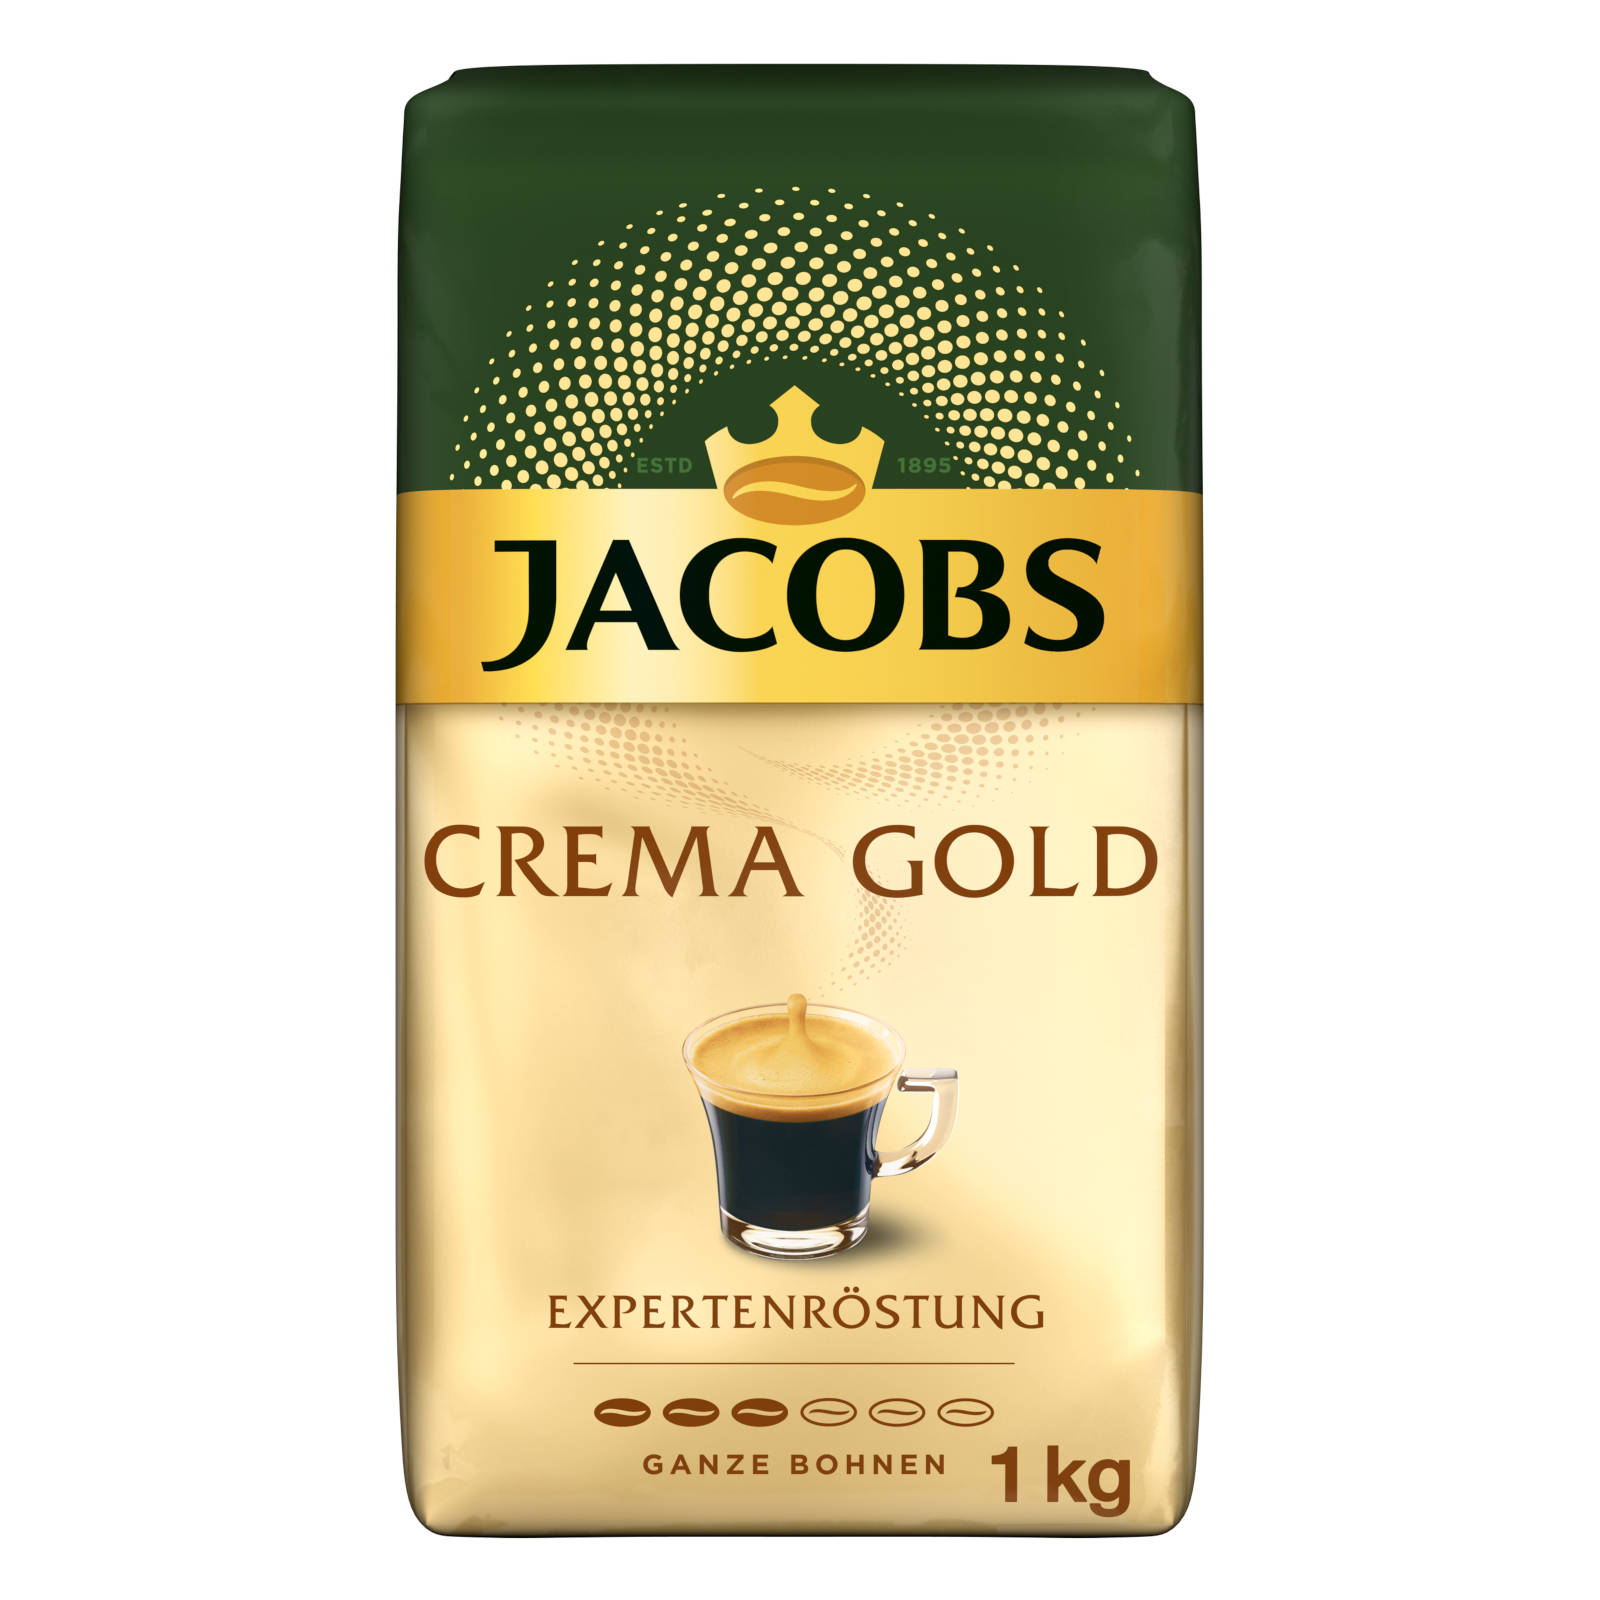 1 (Kaffeevollautomat) Gold ganze x 4 kg geröstete JACOBS Kaffeebohnen Expertenröstung Crema